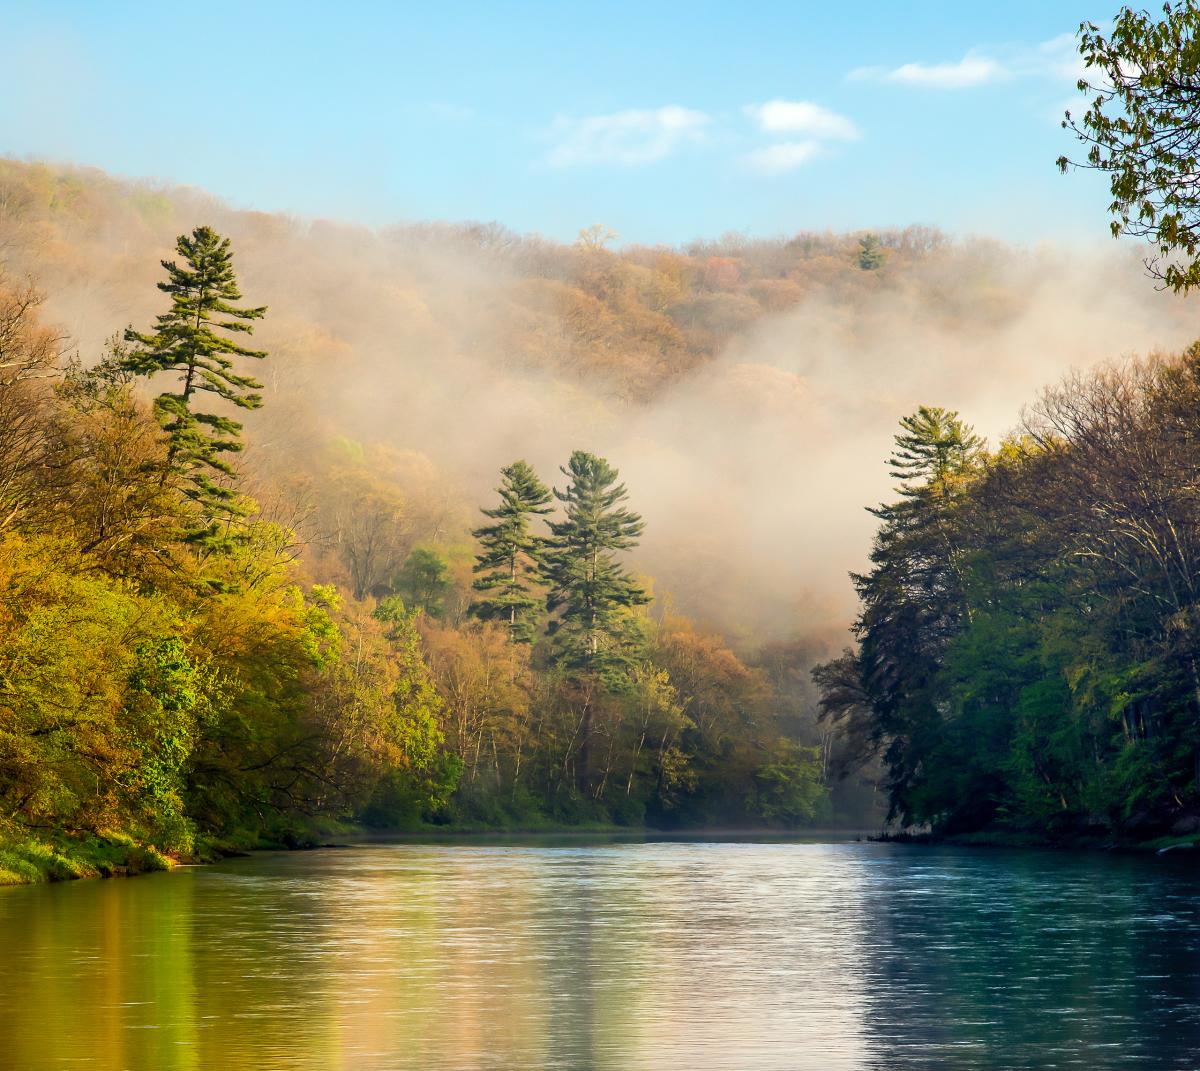 Clarion River, Pennsylvania